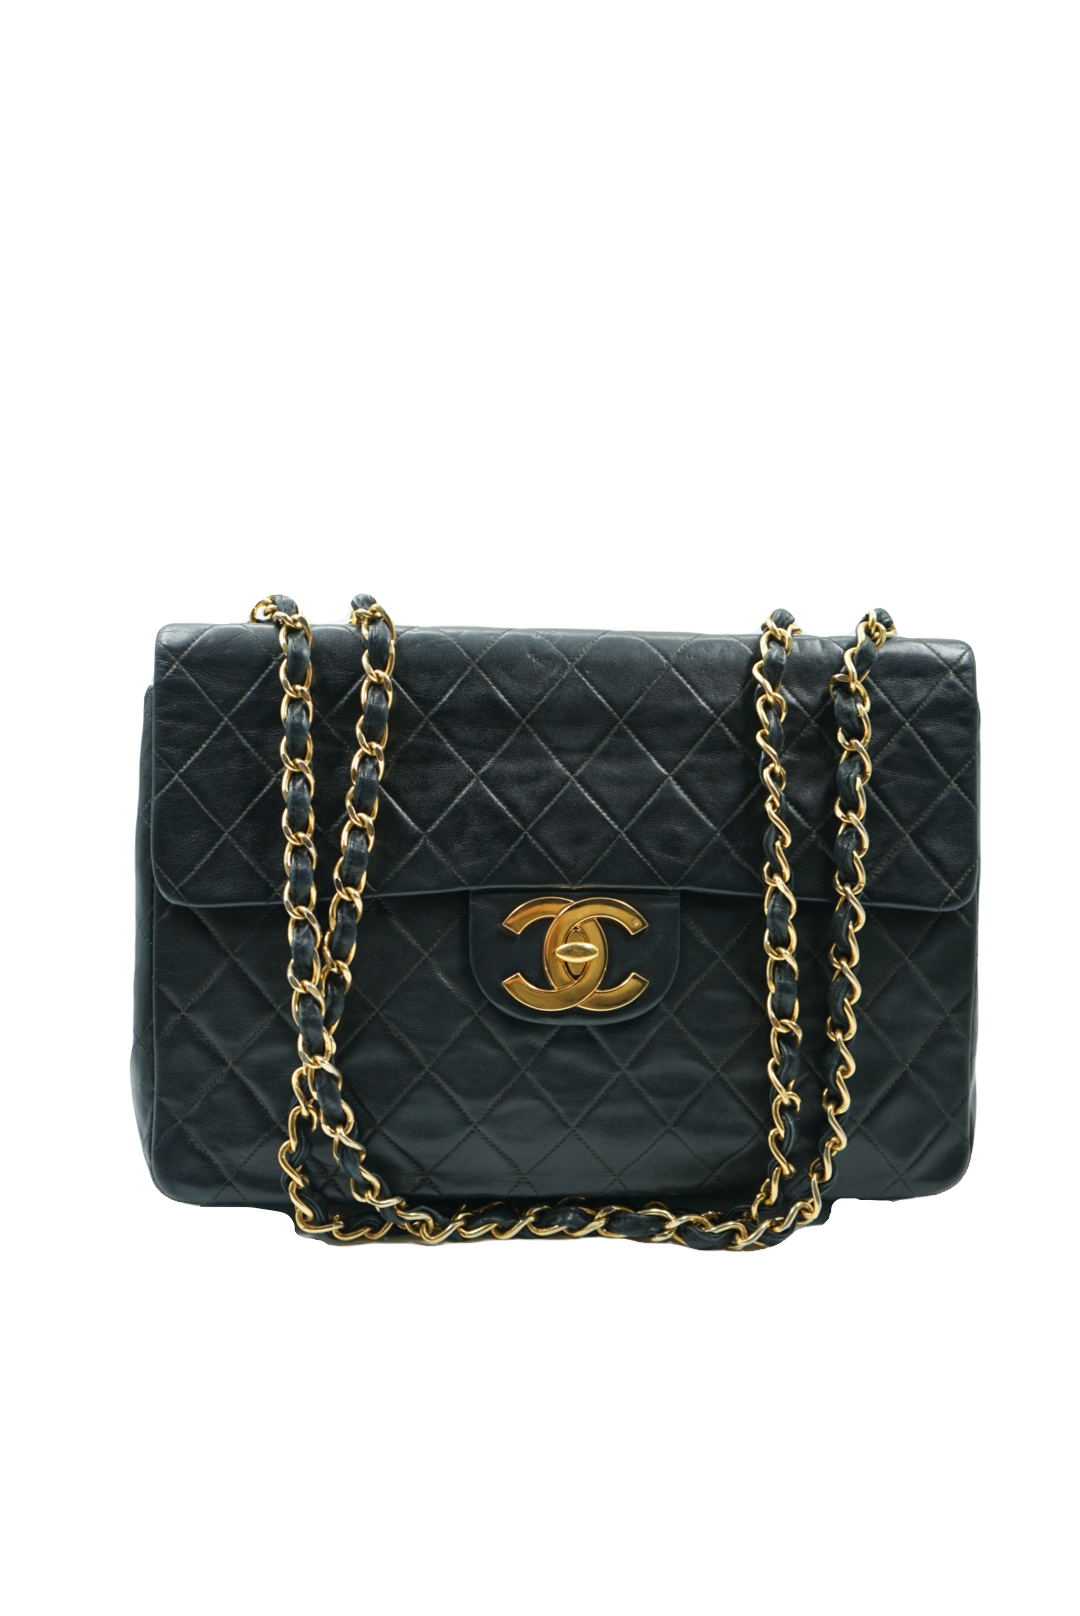 Chanel Black Patent Leather Flap Shoulder Bag Auction